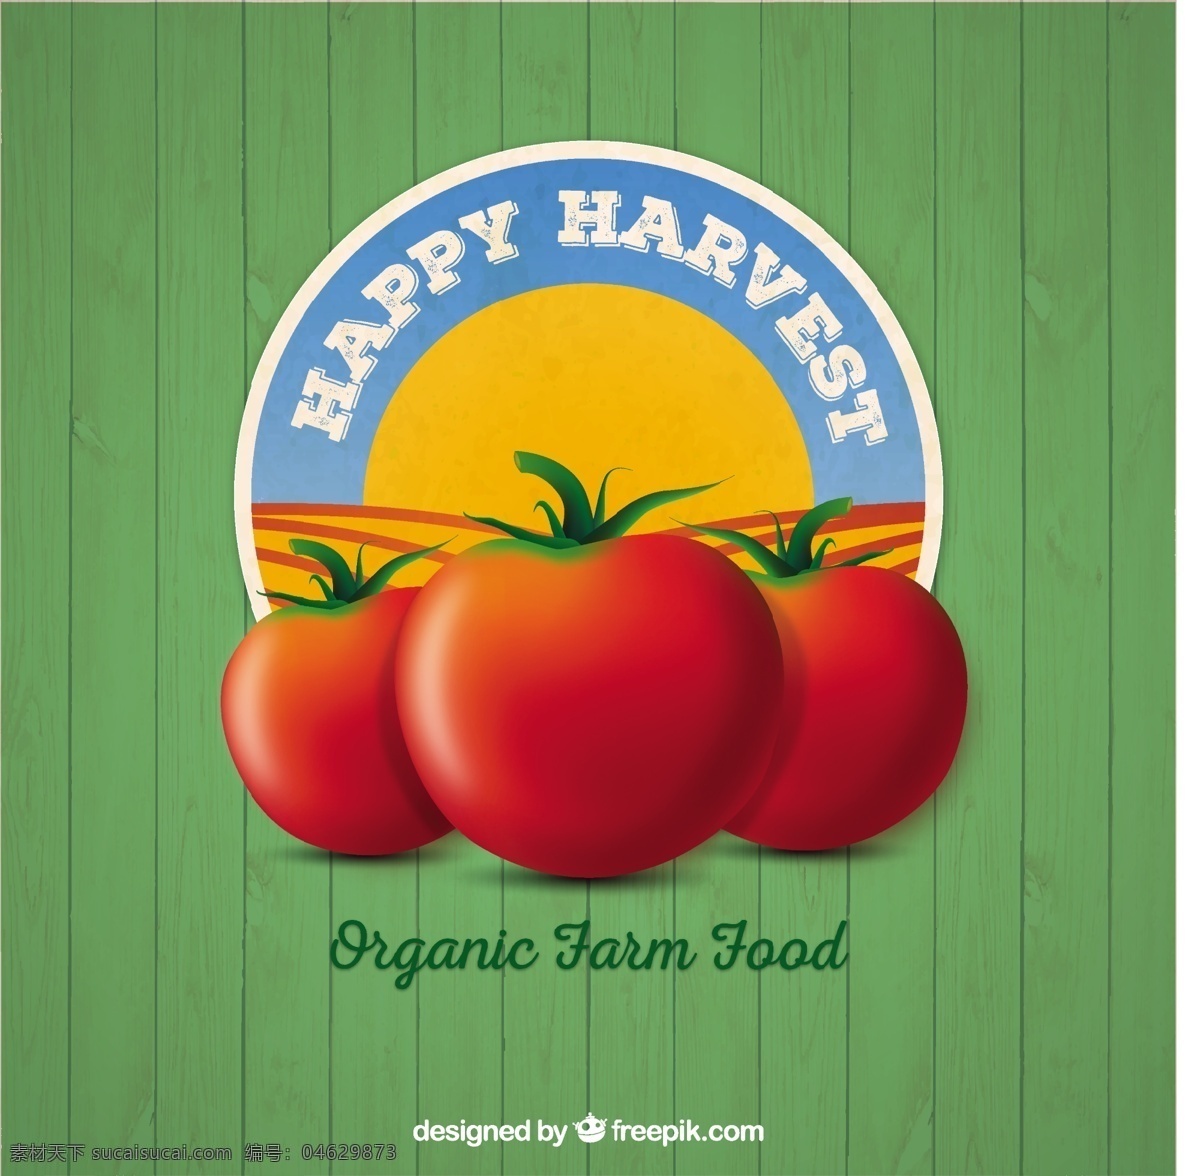 有机食品标志 食品 徽章 性质 农场 蔬菜 生态 有机 自然 健康 环境 番茄 产品 开发 健康食品 新鲜 生态友好 农业 有机食品 收获 绿色